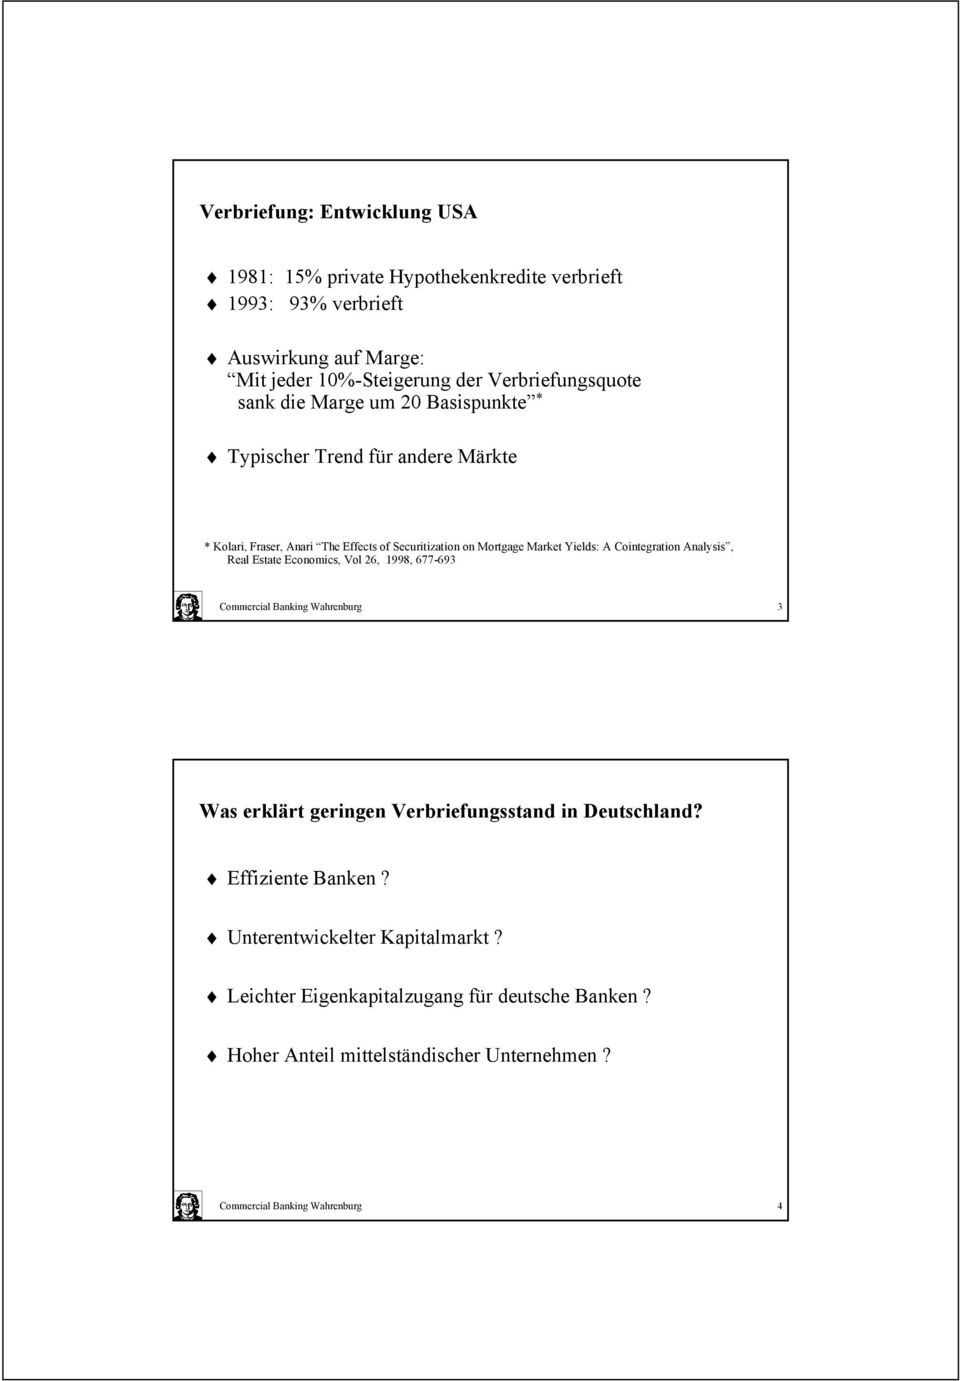 Yields: A Cointegration Analysis, Real Estate Economics, Vol 26, 1998, 677-693 Commercial Banking Wahrenburg 3 Was erklärt geringen Verbriefungsstand in